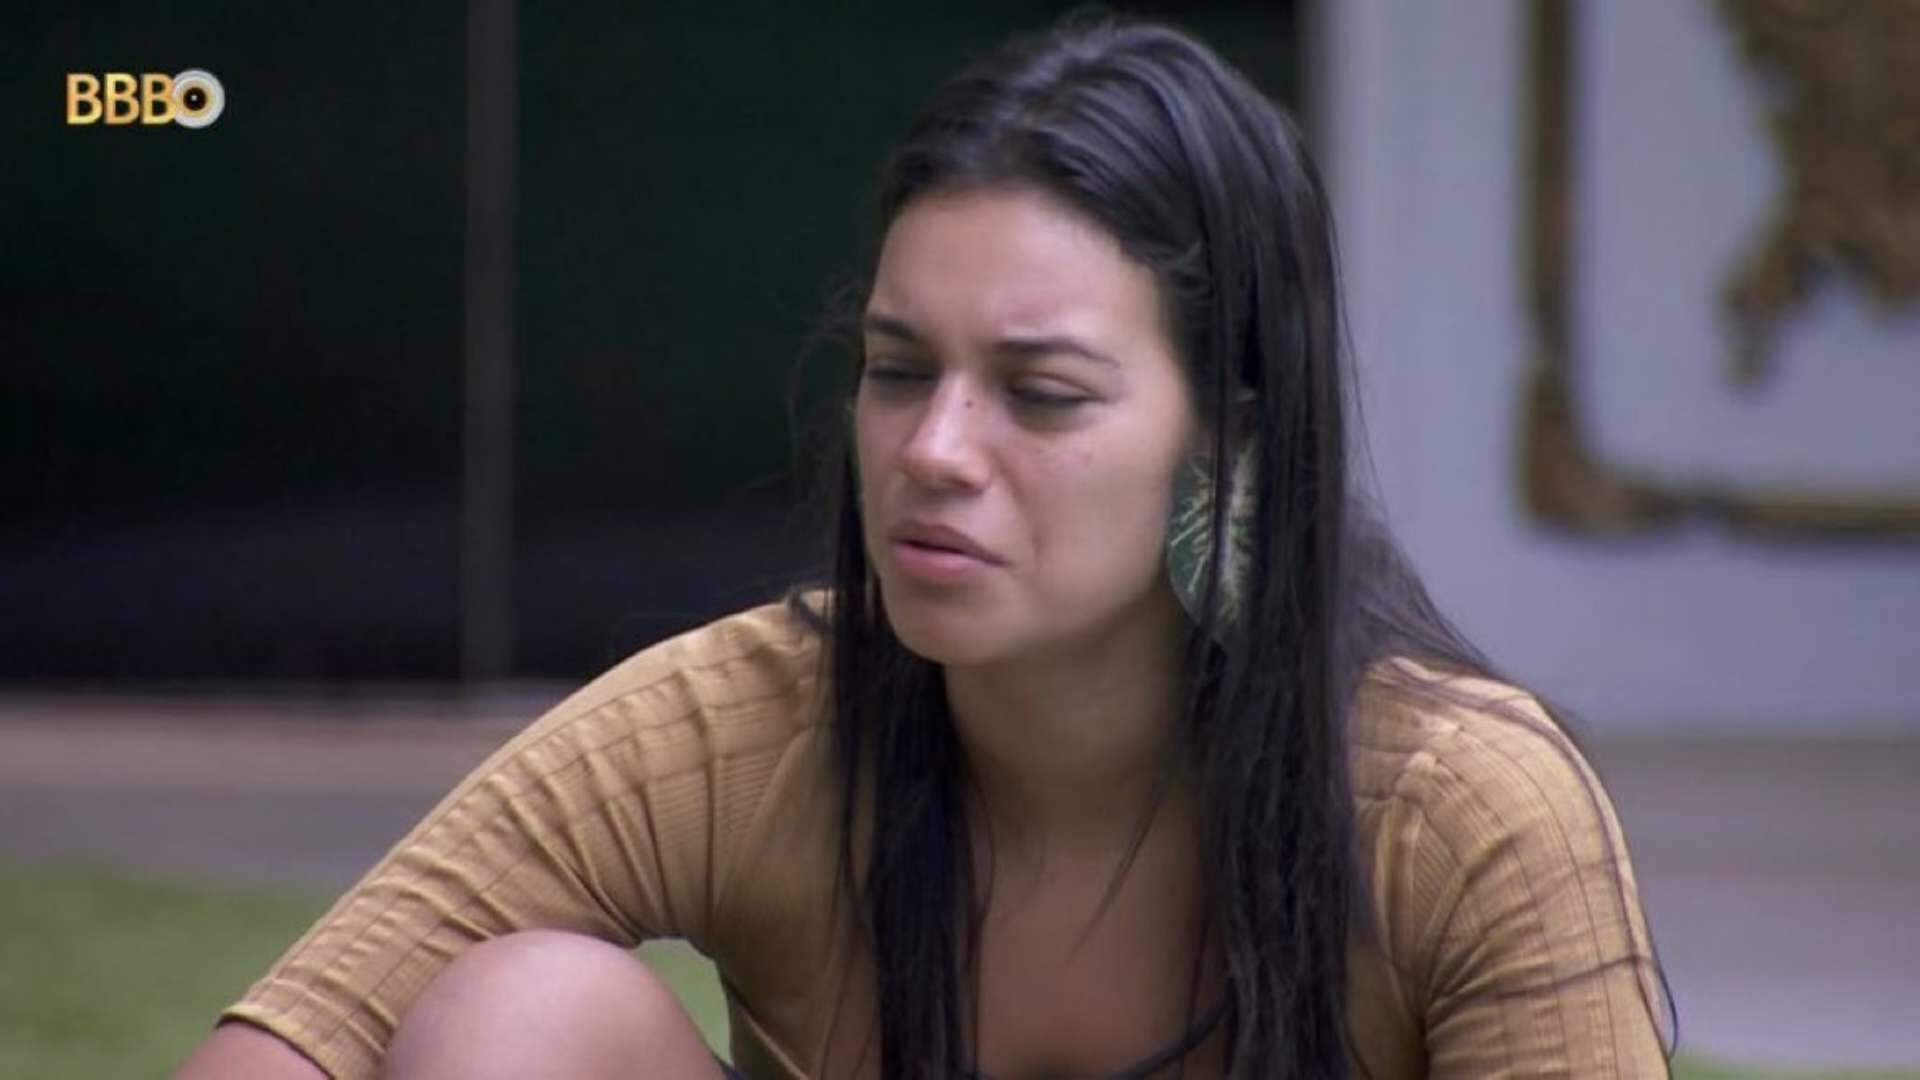 BBB 24: Após mudanças no comportamento de Fernanda, Alane expõe tudo o que pensa sobre a rival - Metropolitana FM